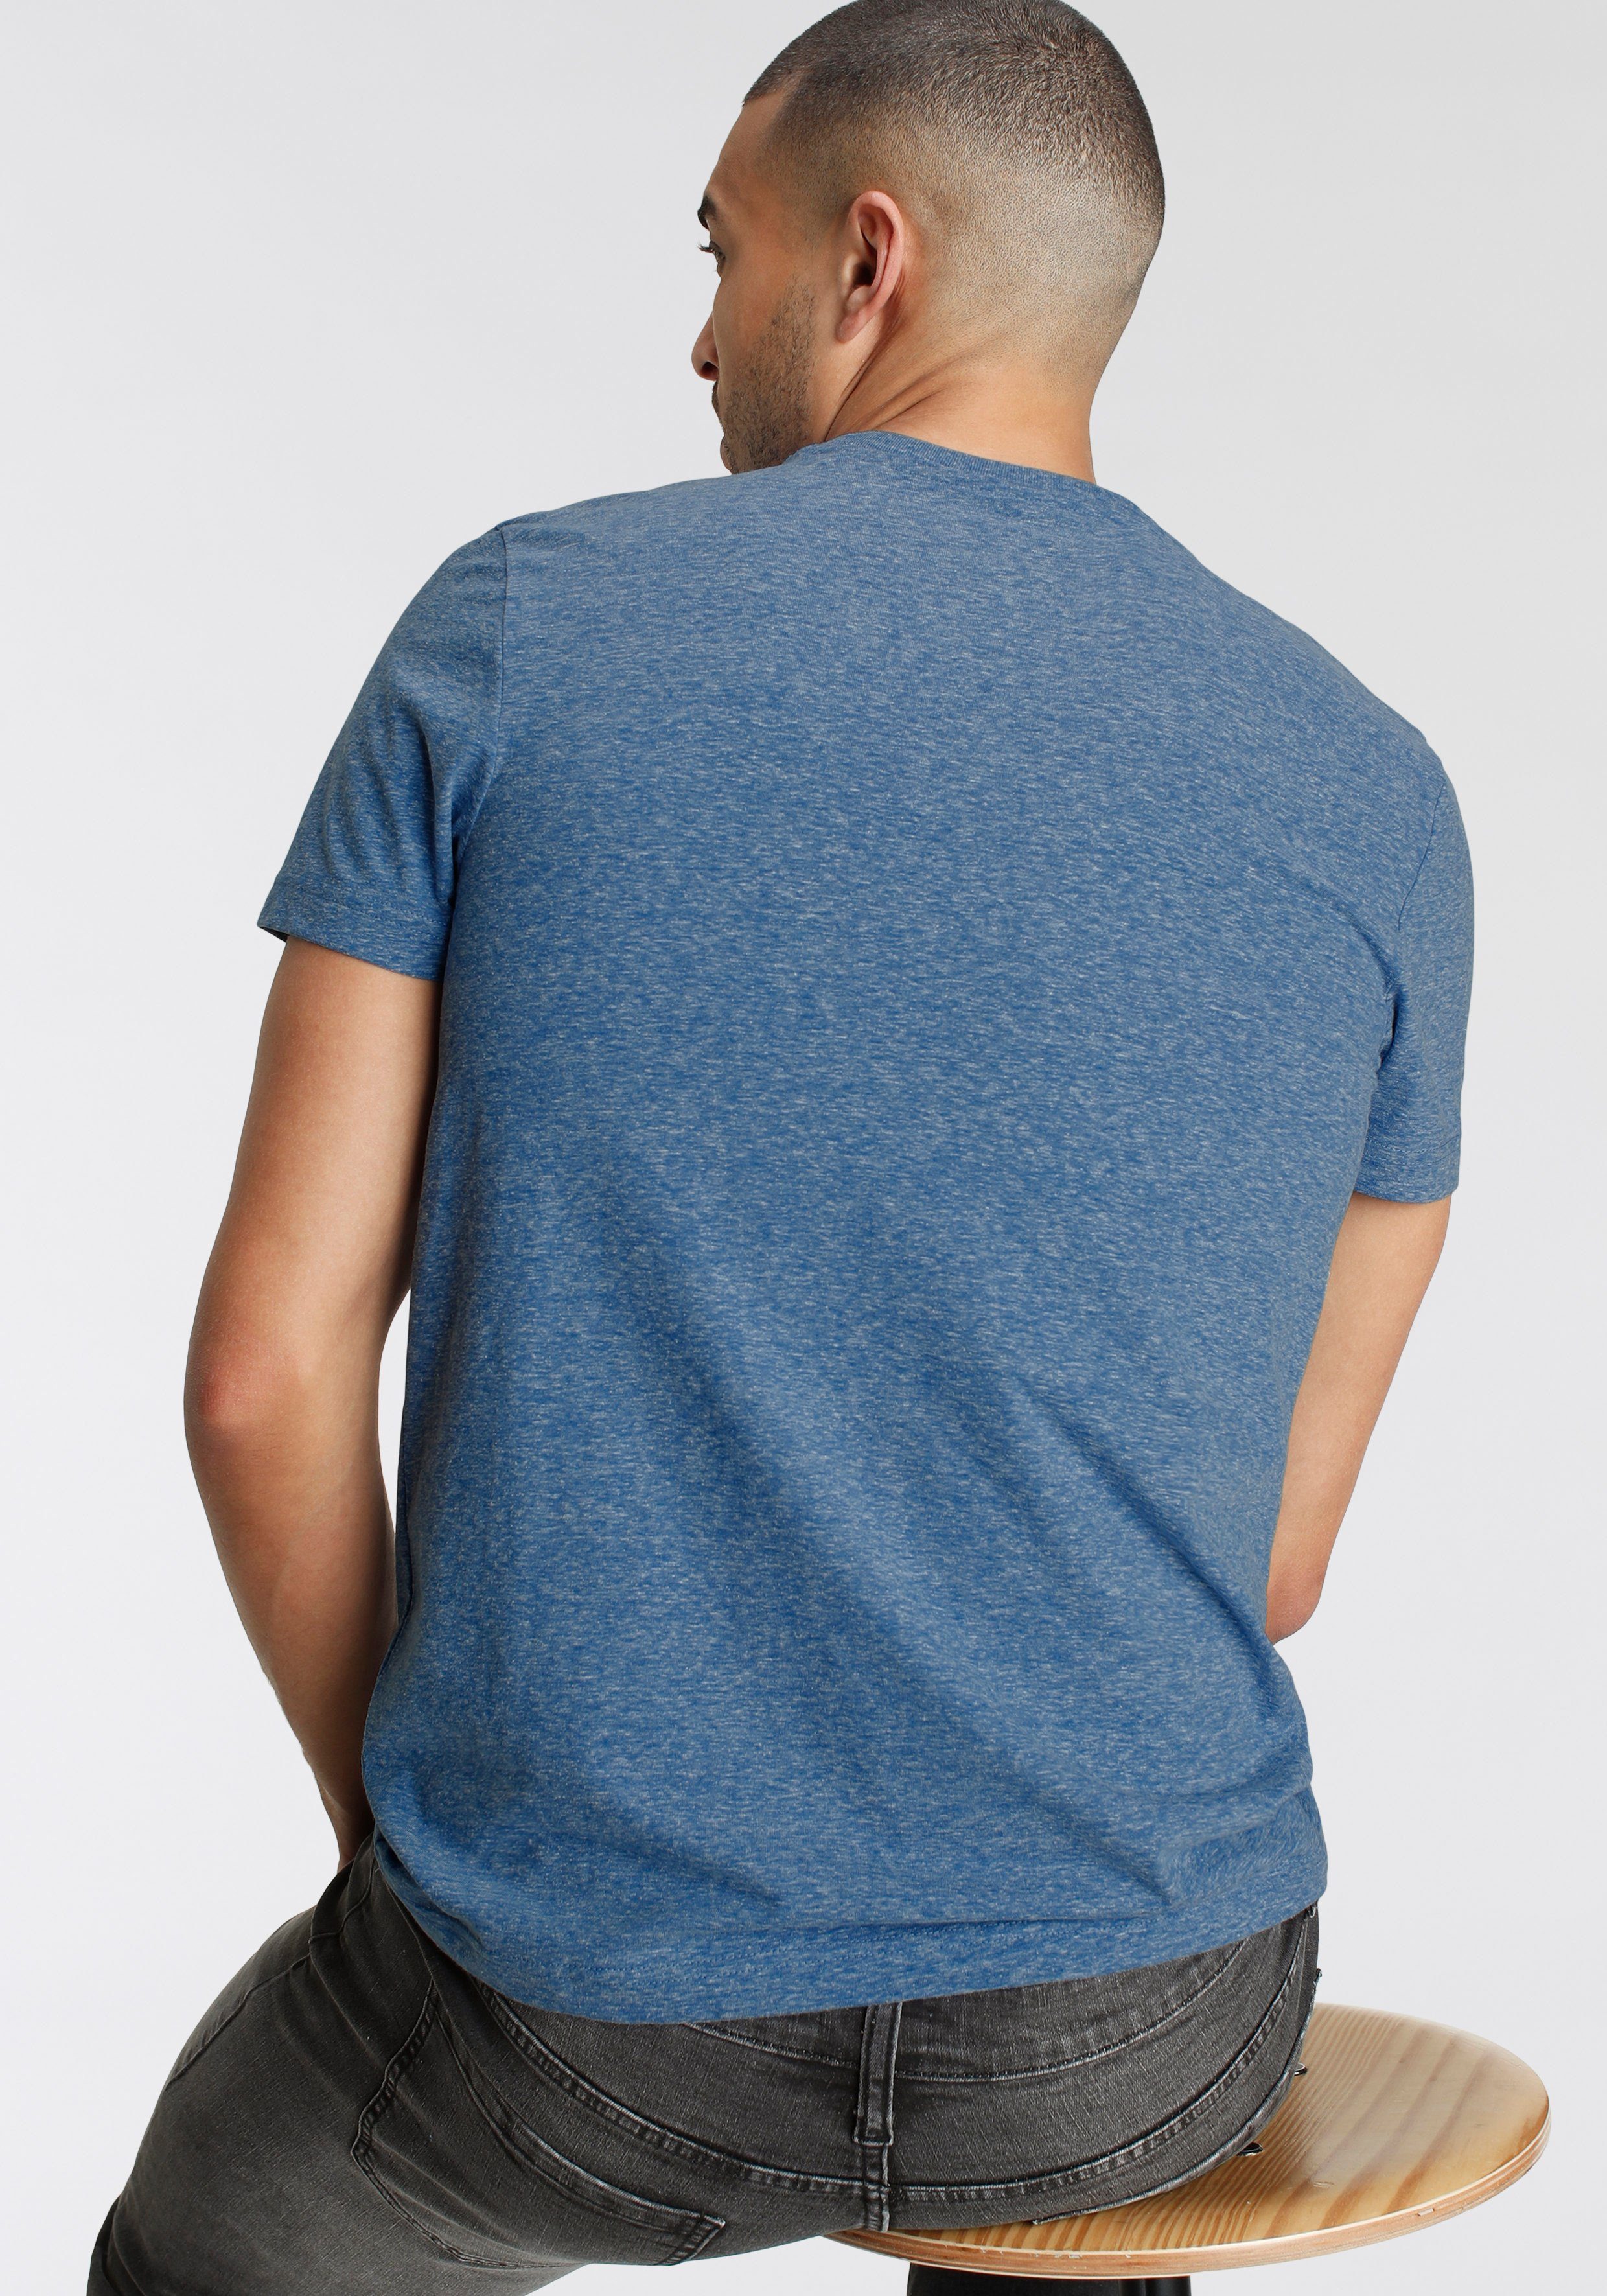 AJC T-Shirt in Optik Melange besonderer Logo meliert und blau Print mit